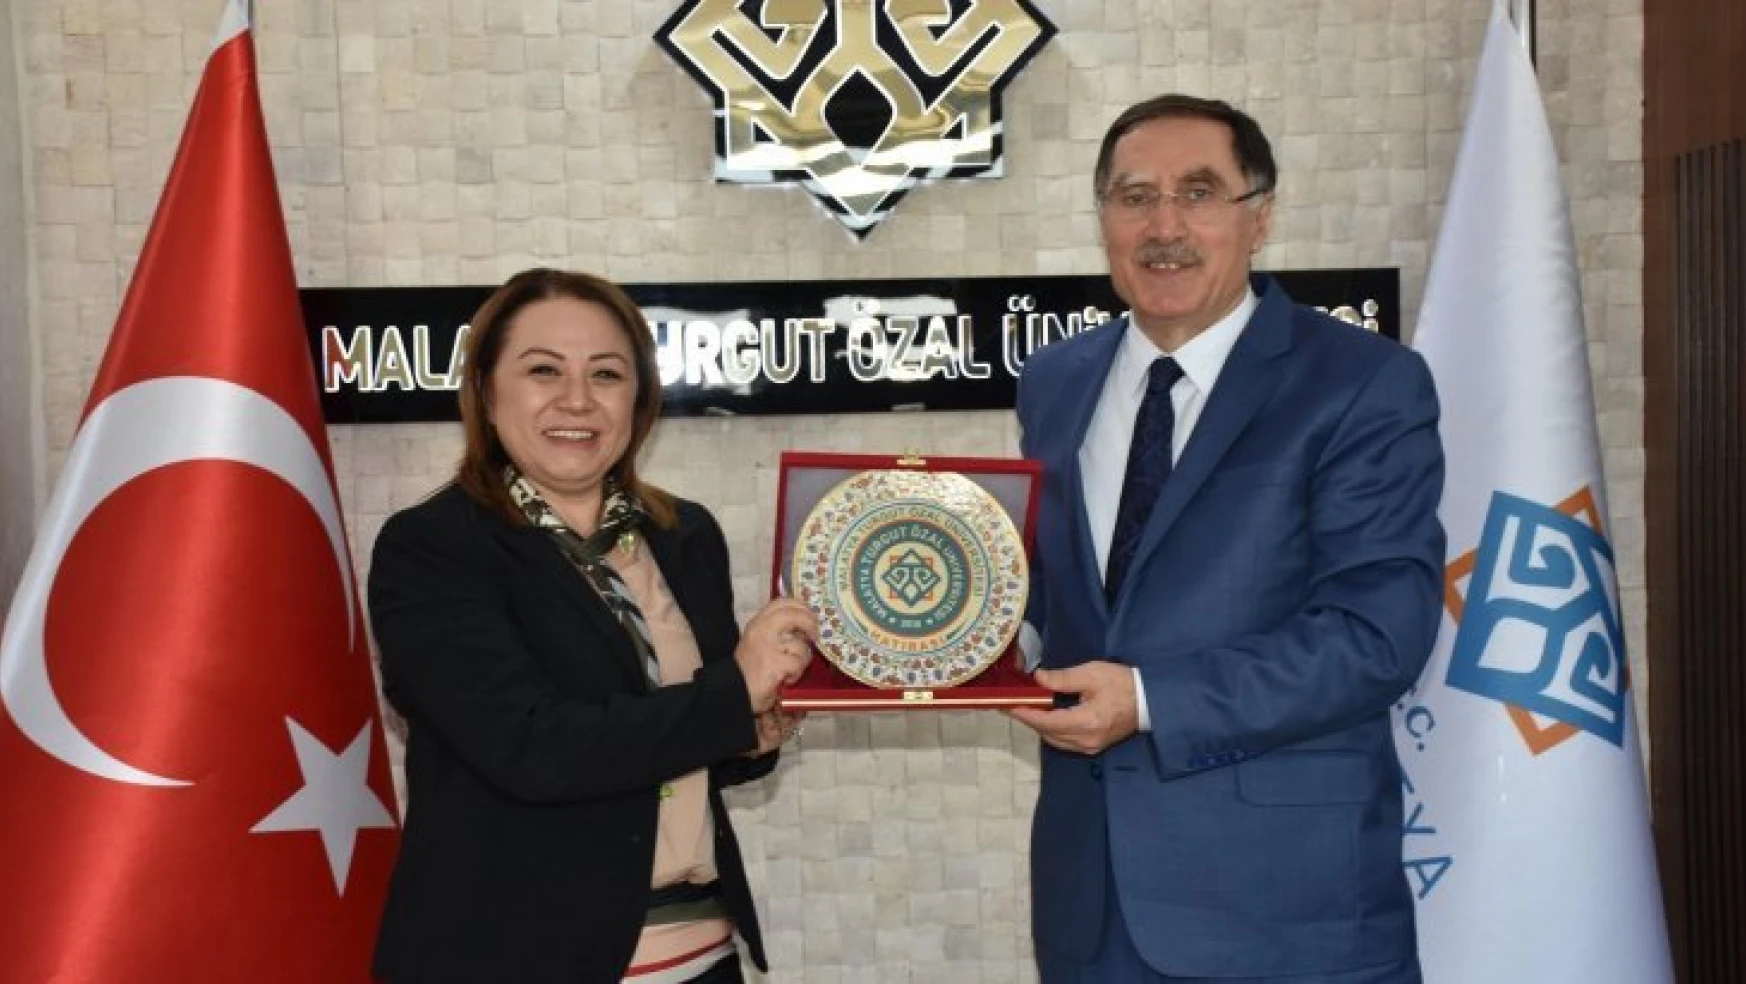 Kamu Başdenetçisi Malkoç'tan MTÜ Rektörü Karabulut'a Ziyaret